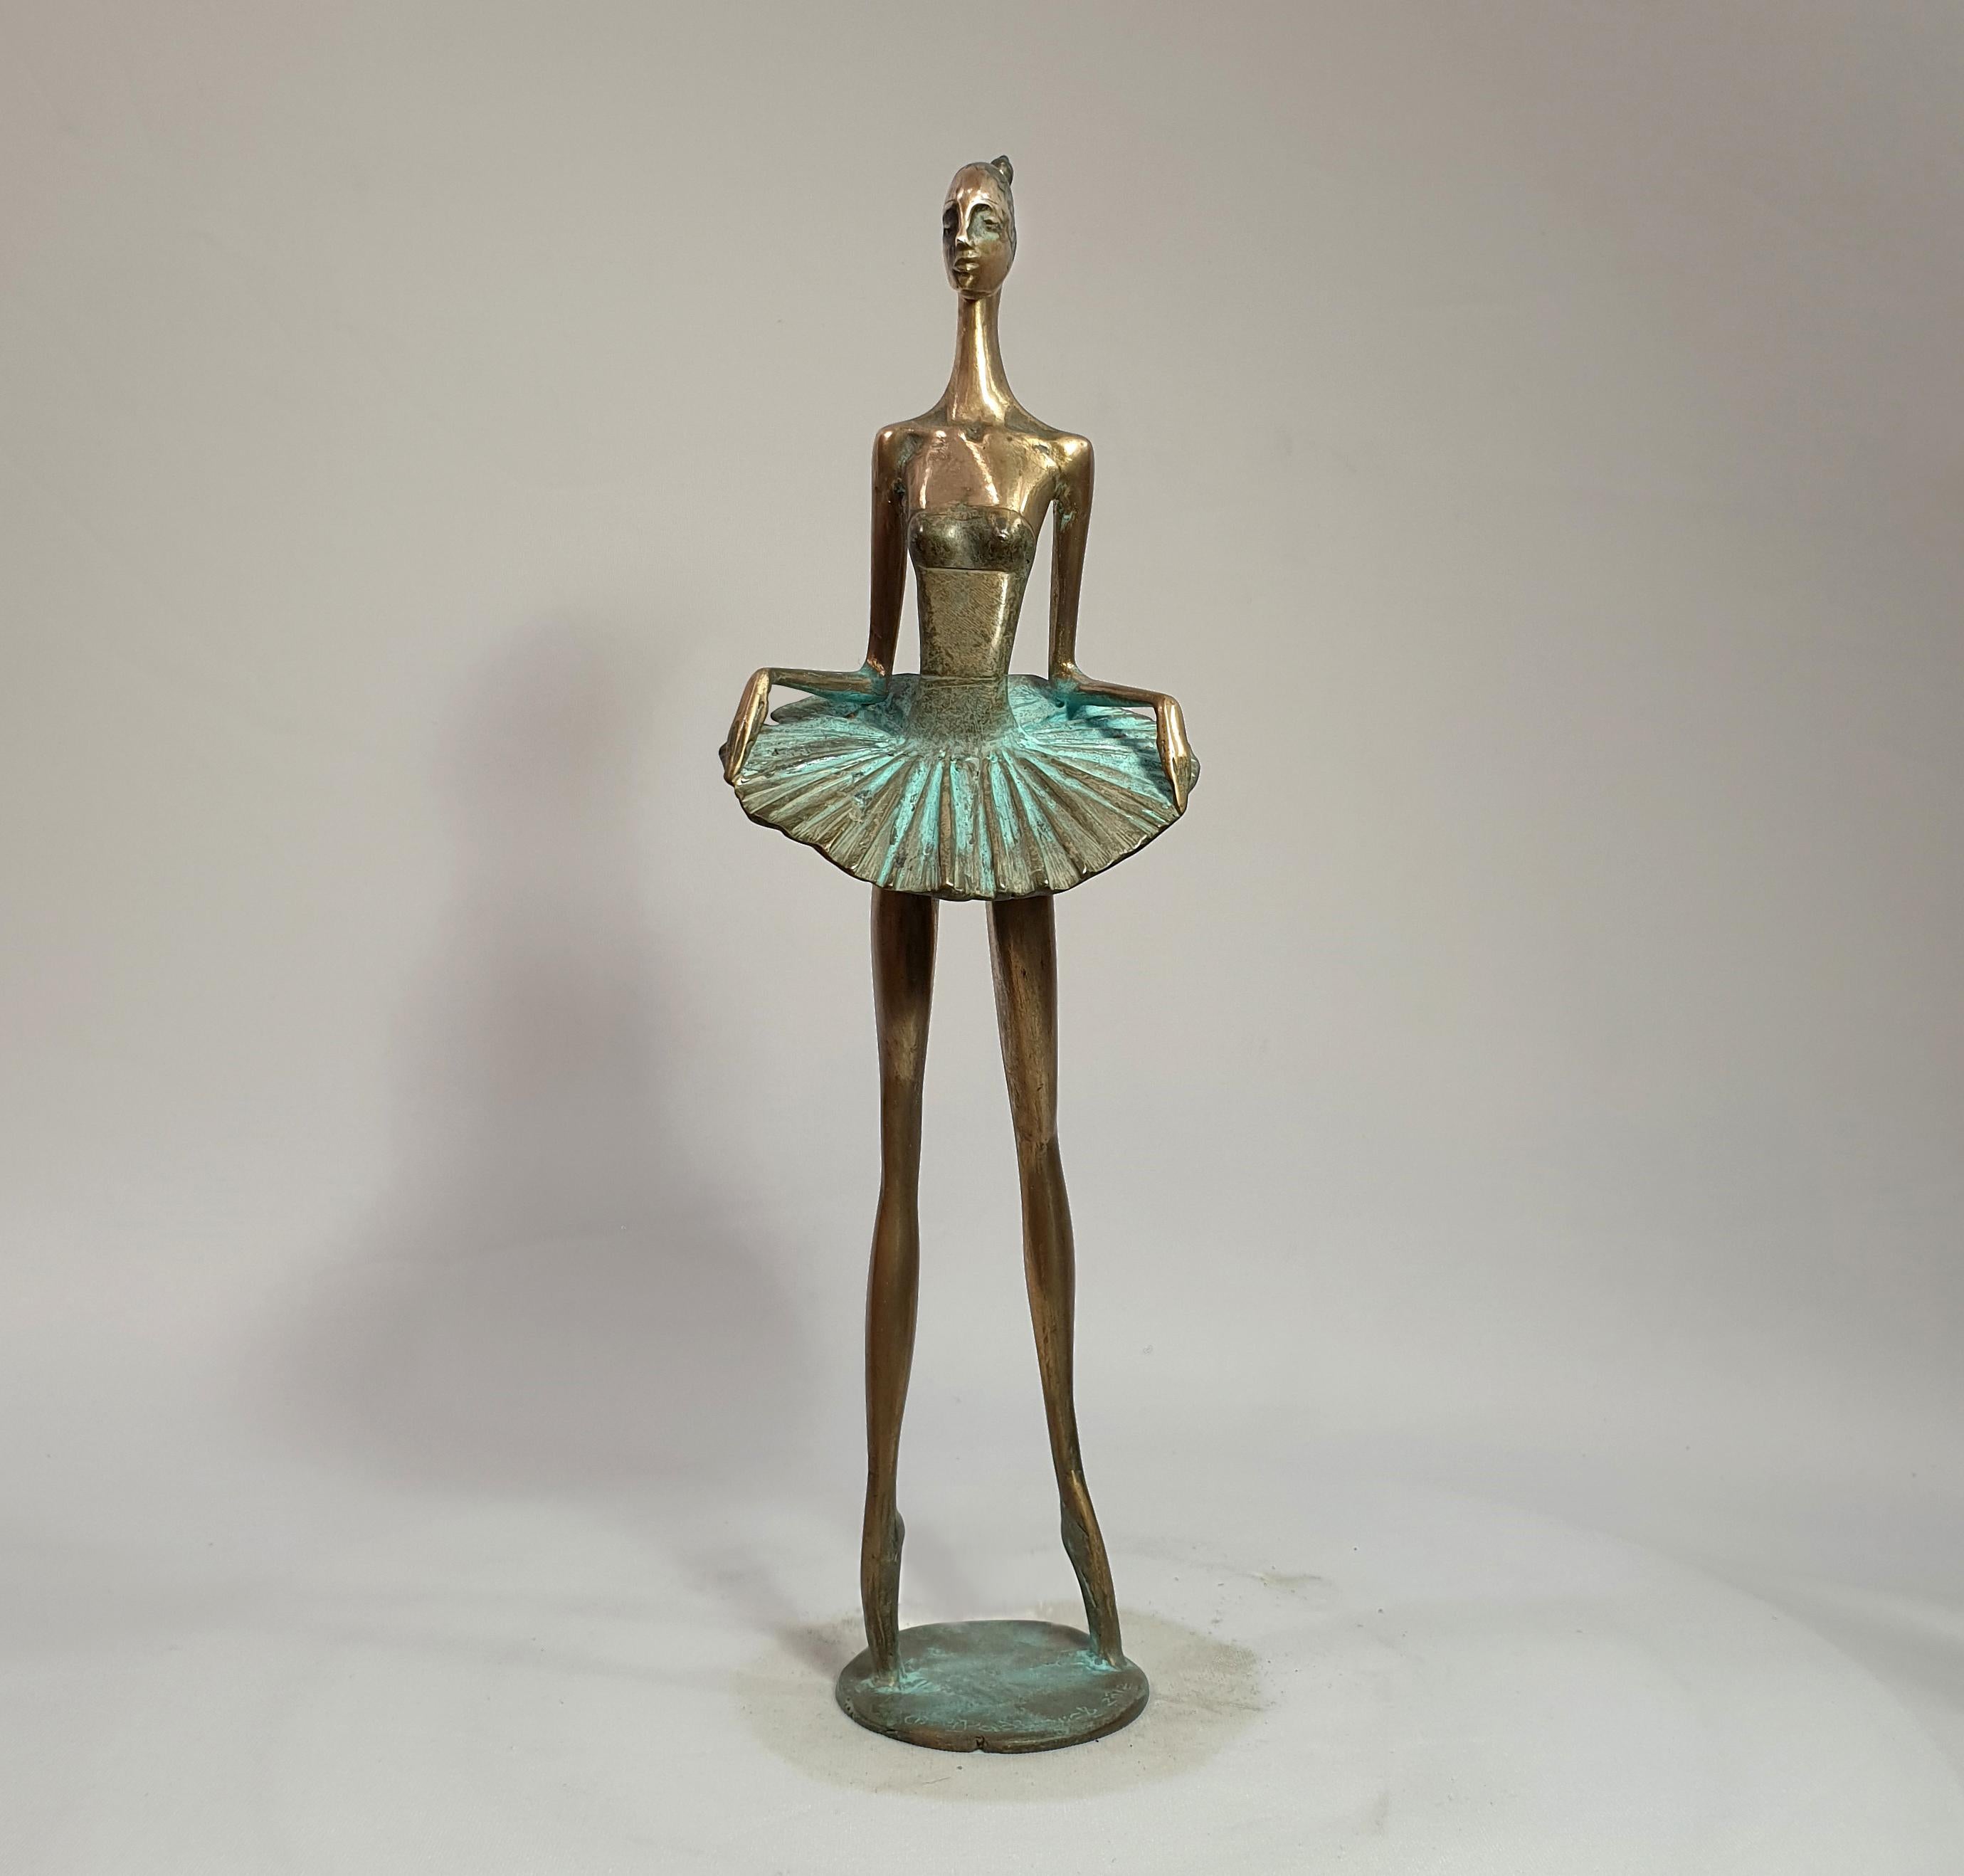 Standing ballerina - Sculpture by Alex Radionov